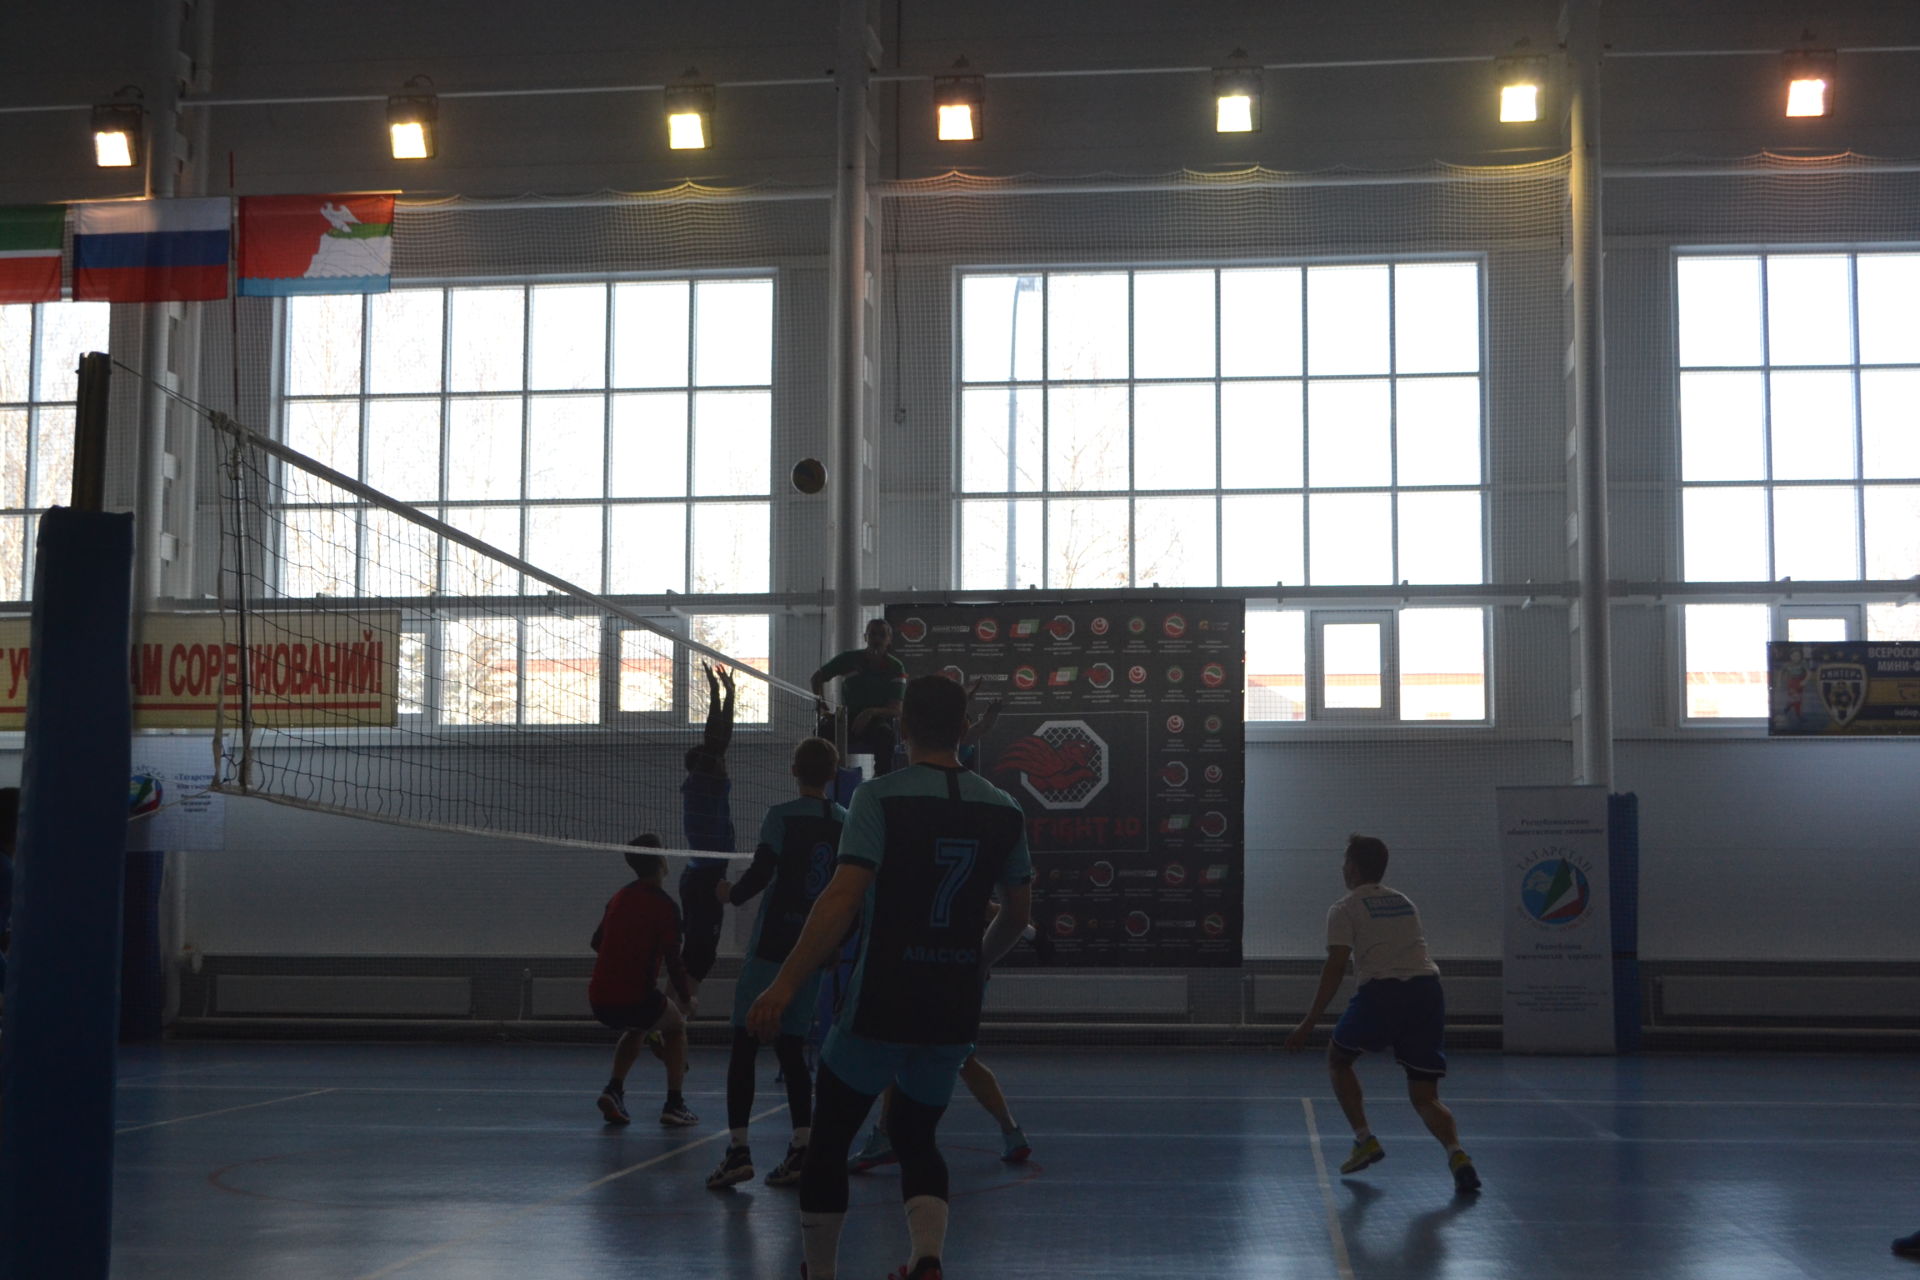 В Верхнем Услоне прошли зональные соревнования по волейболу